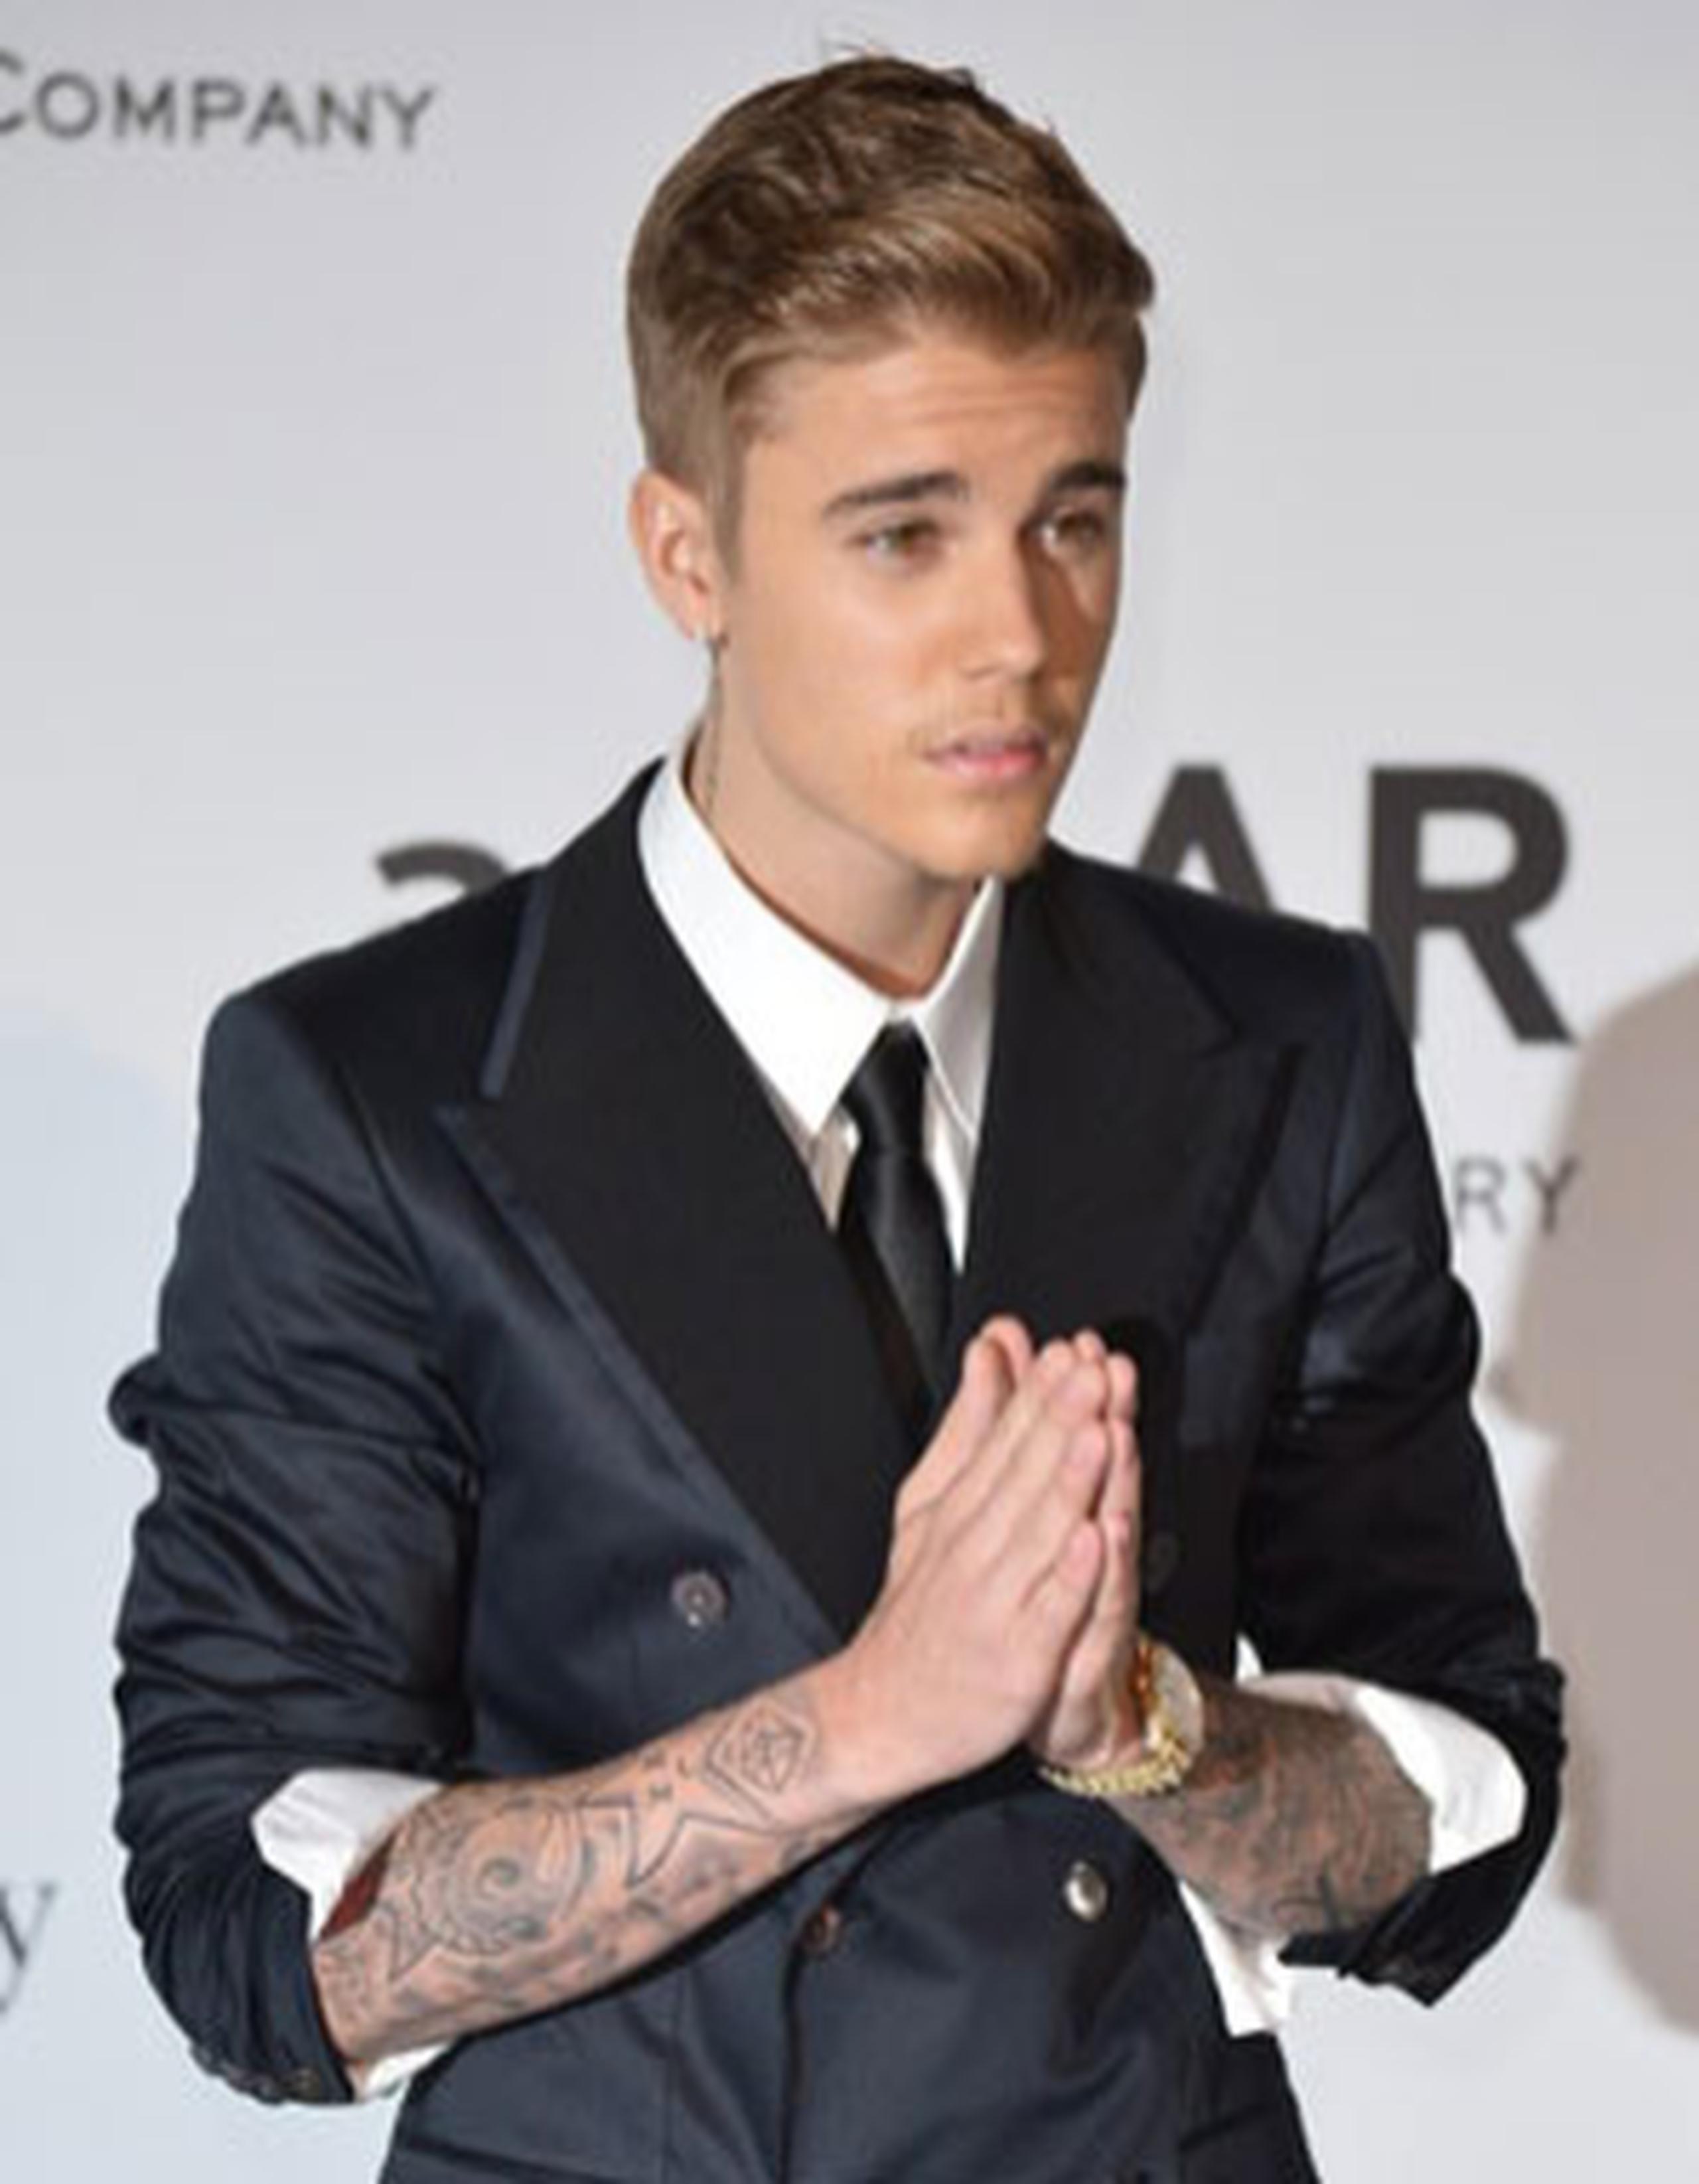 La retirada de los cargos contra Bieber se produce pocos días después de que fuese arrestado por conducción temeraria y agresión en una población cercana a Toronto. (Archivo/AFP)